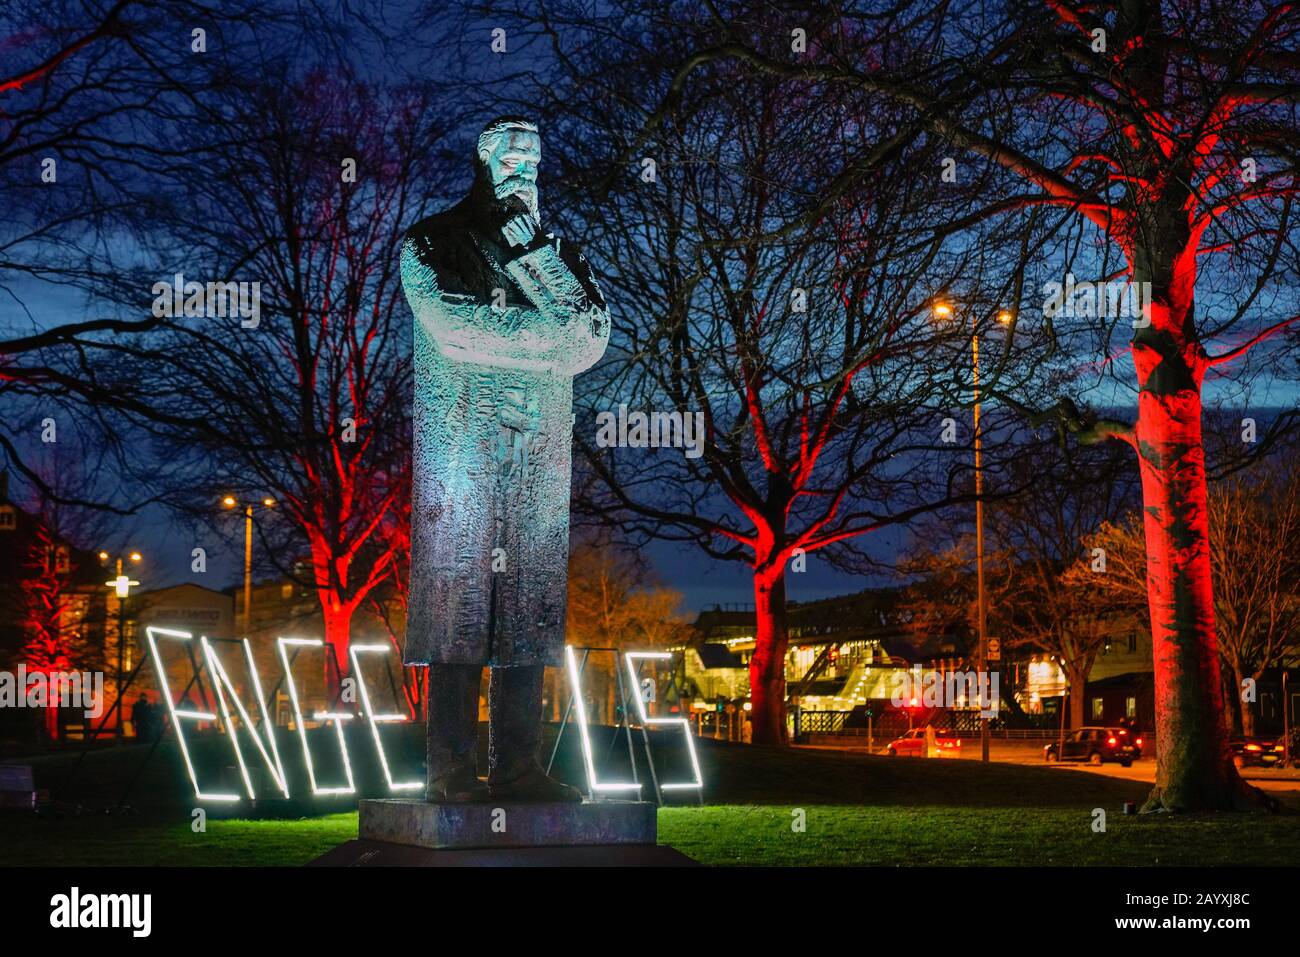 Das Engels Memorial ist eine Bronzestatue des deutschen Philosophen und kommunistischen Revolutionärs FRIEDRICH ENGELS, die von dem chinesischen Bildhauer Zeng Chenggang (2014) gefertigt wurde. Es befindet sich im Garten Engels in Wuppertal. Stockfoto